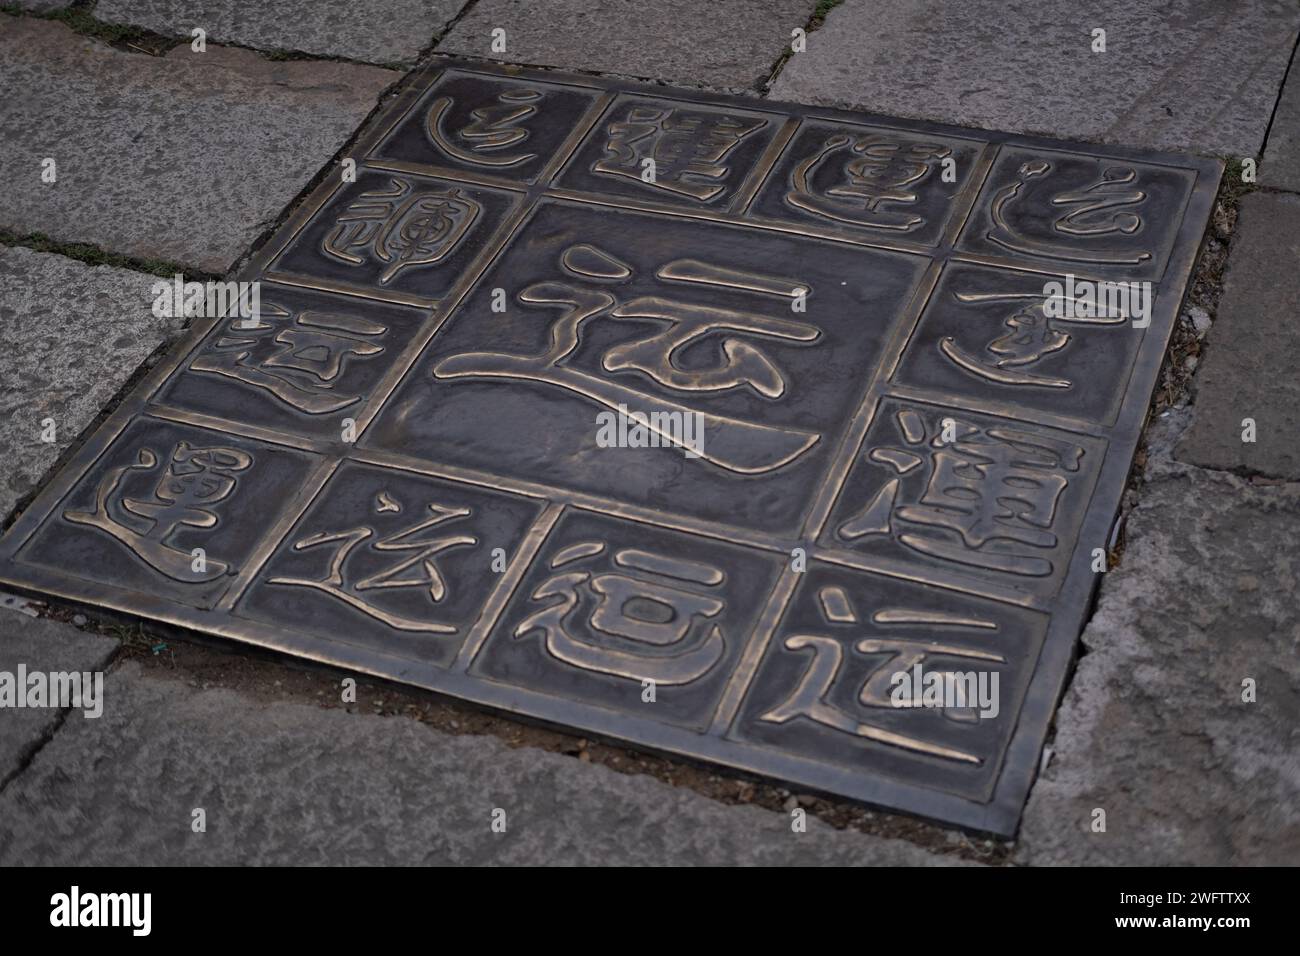 Piastrelle metalliche che simboleggiano la fortuna (Yun) secondo la cultura cinese, collocate in mezzo a una strada Foto Stock